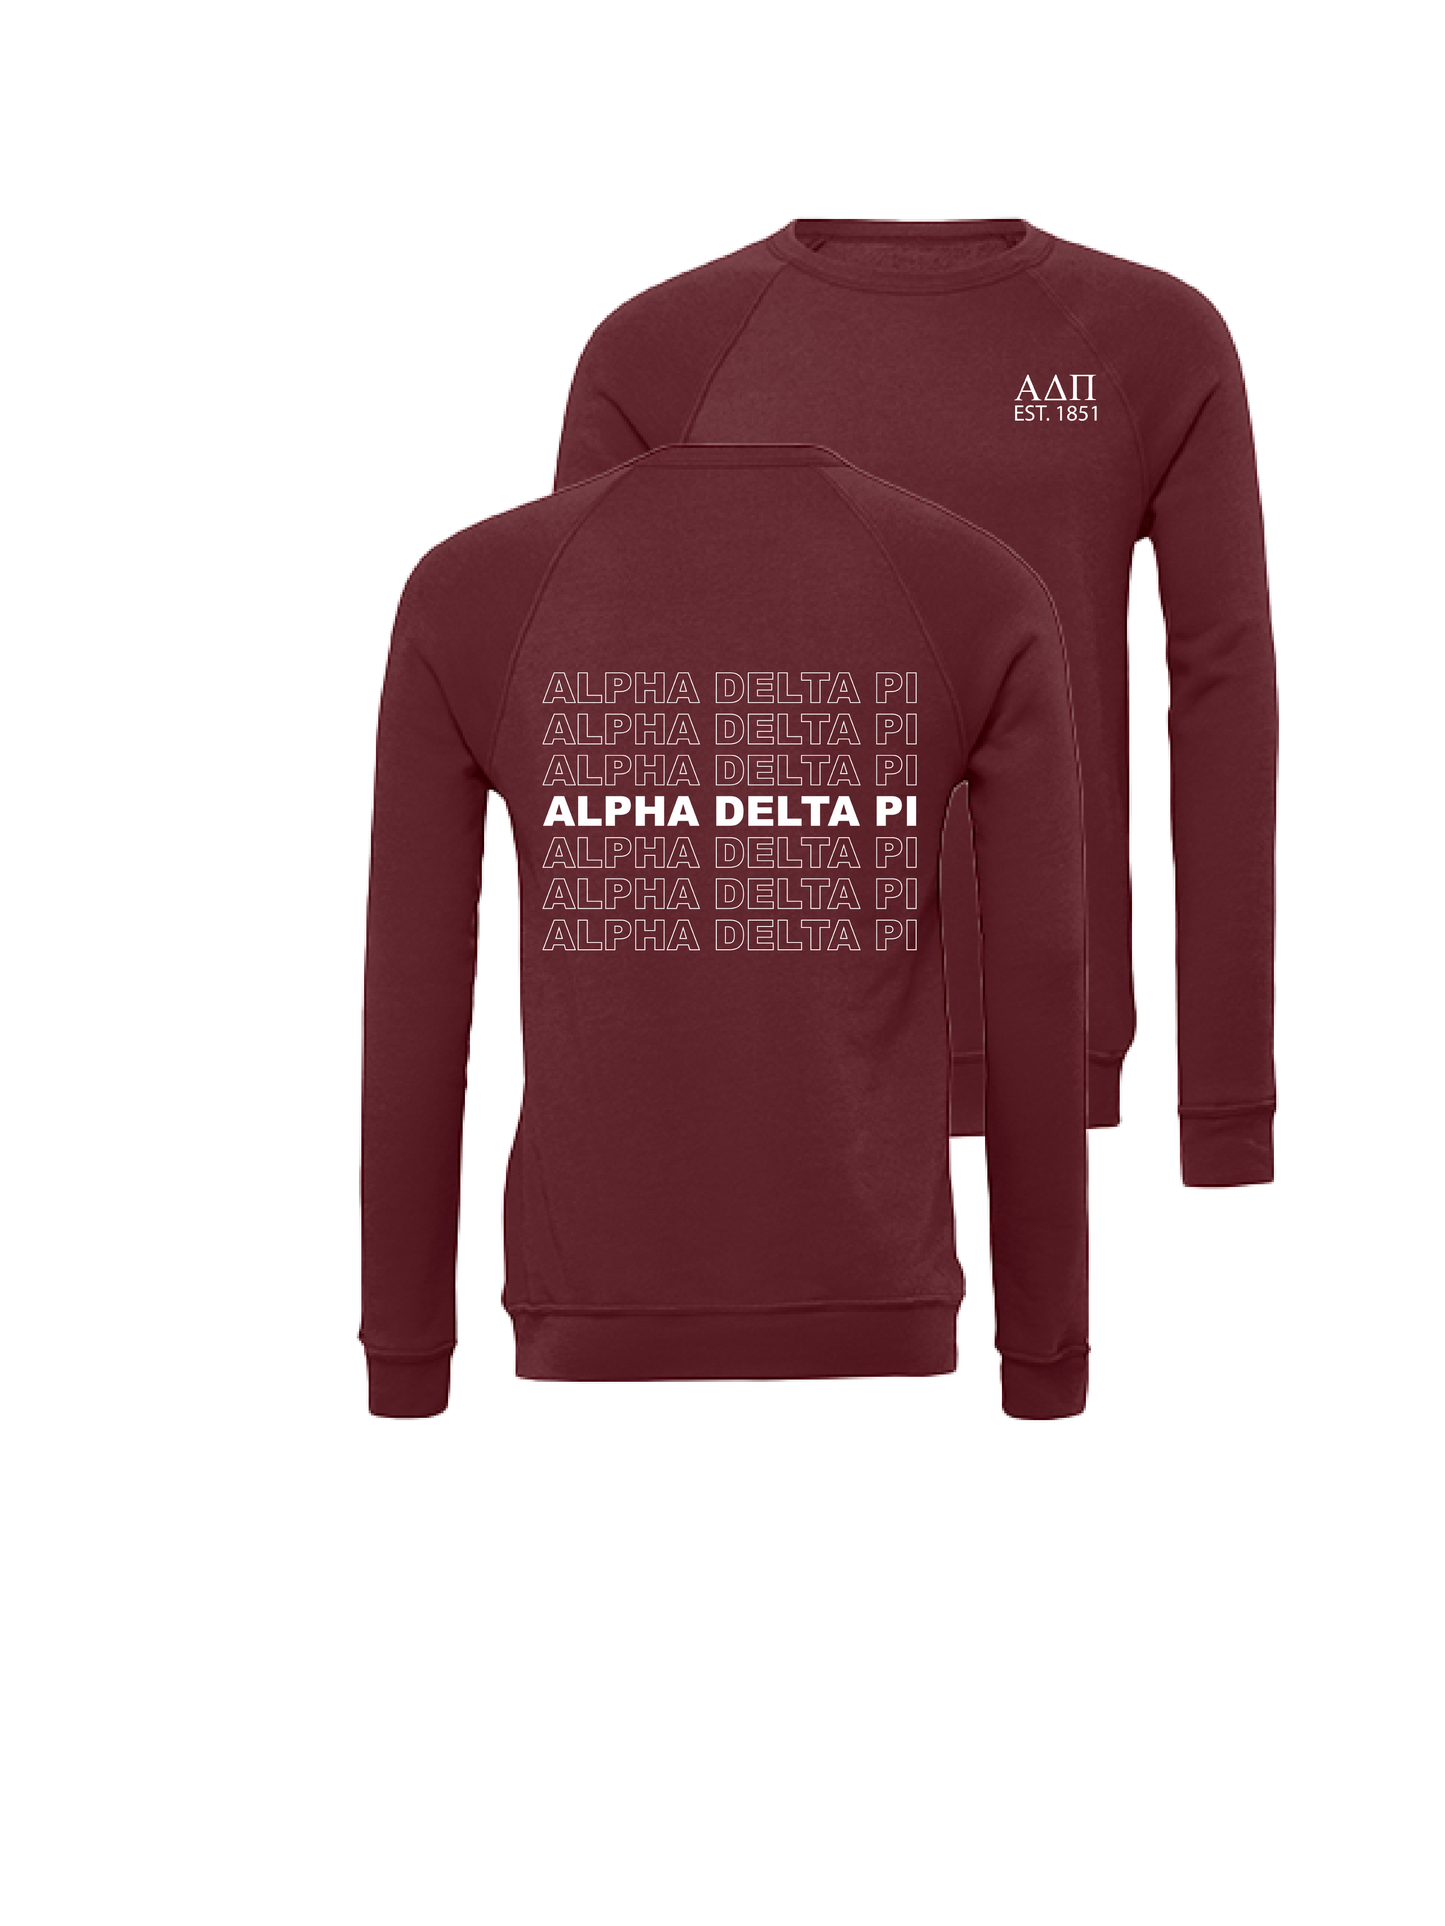 Alpha Delta Pi Repeating Name Crewneck Sweatshirts